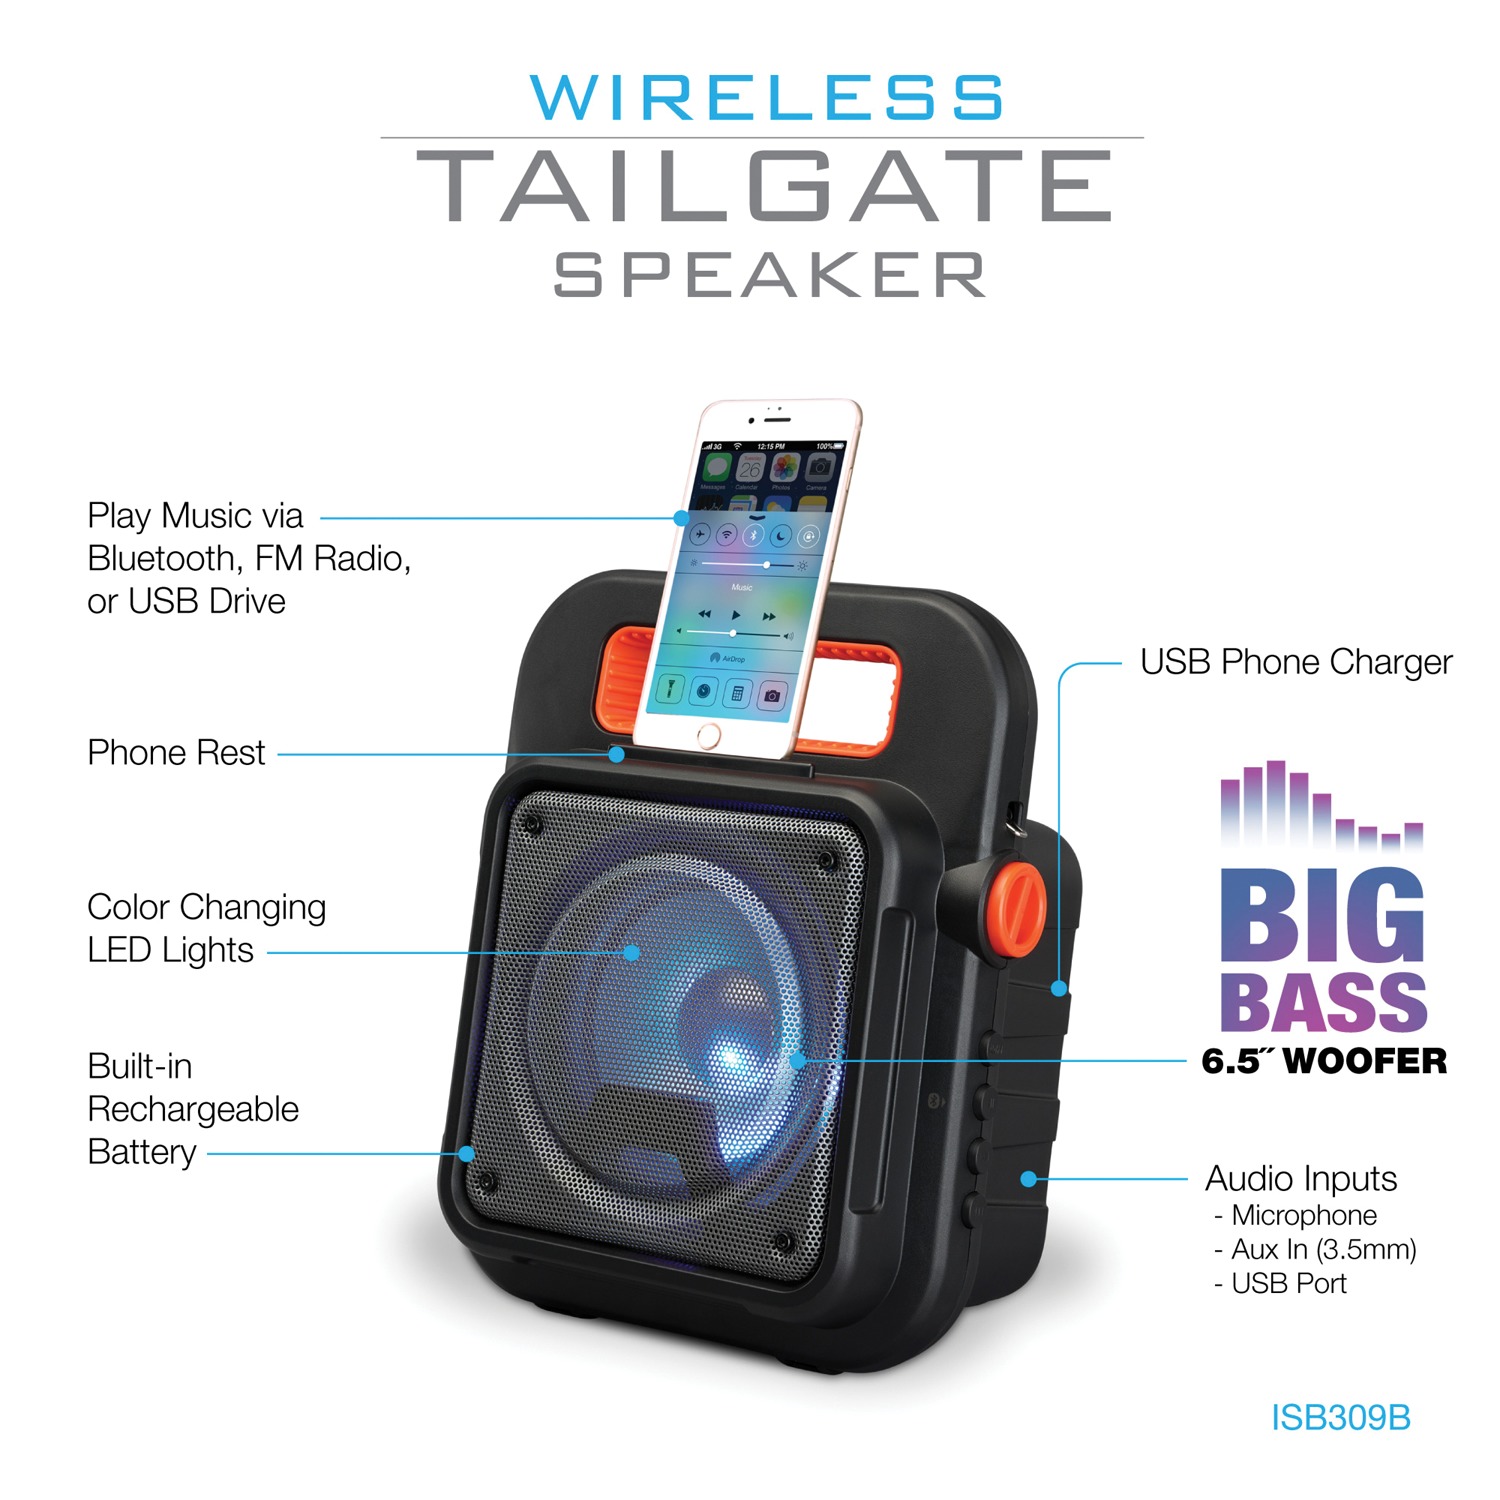 iLive Portable Bluetooth Speaker, Black, ISB309B - image 3 of 5